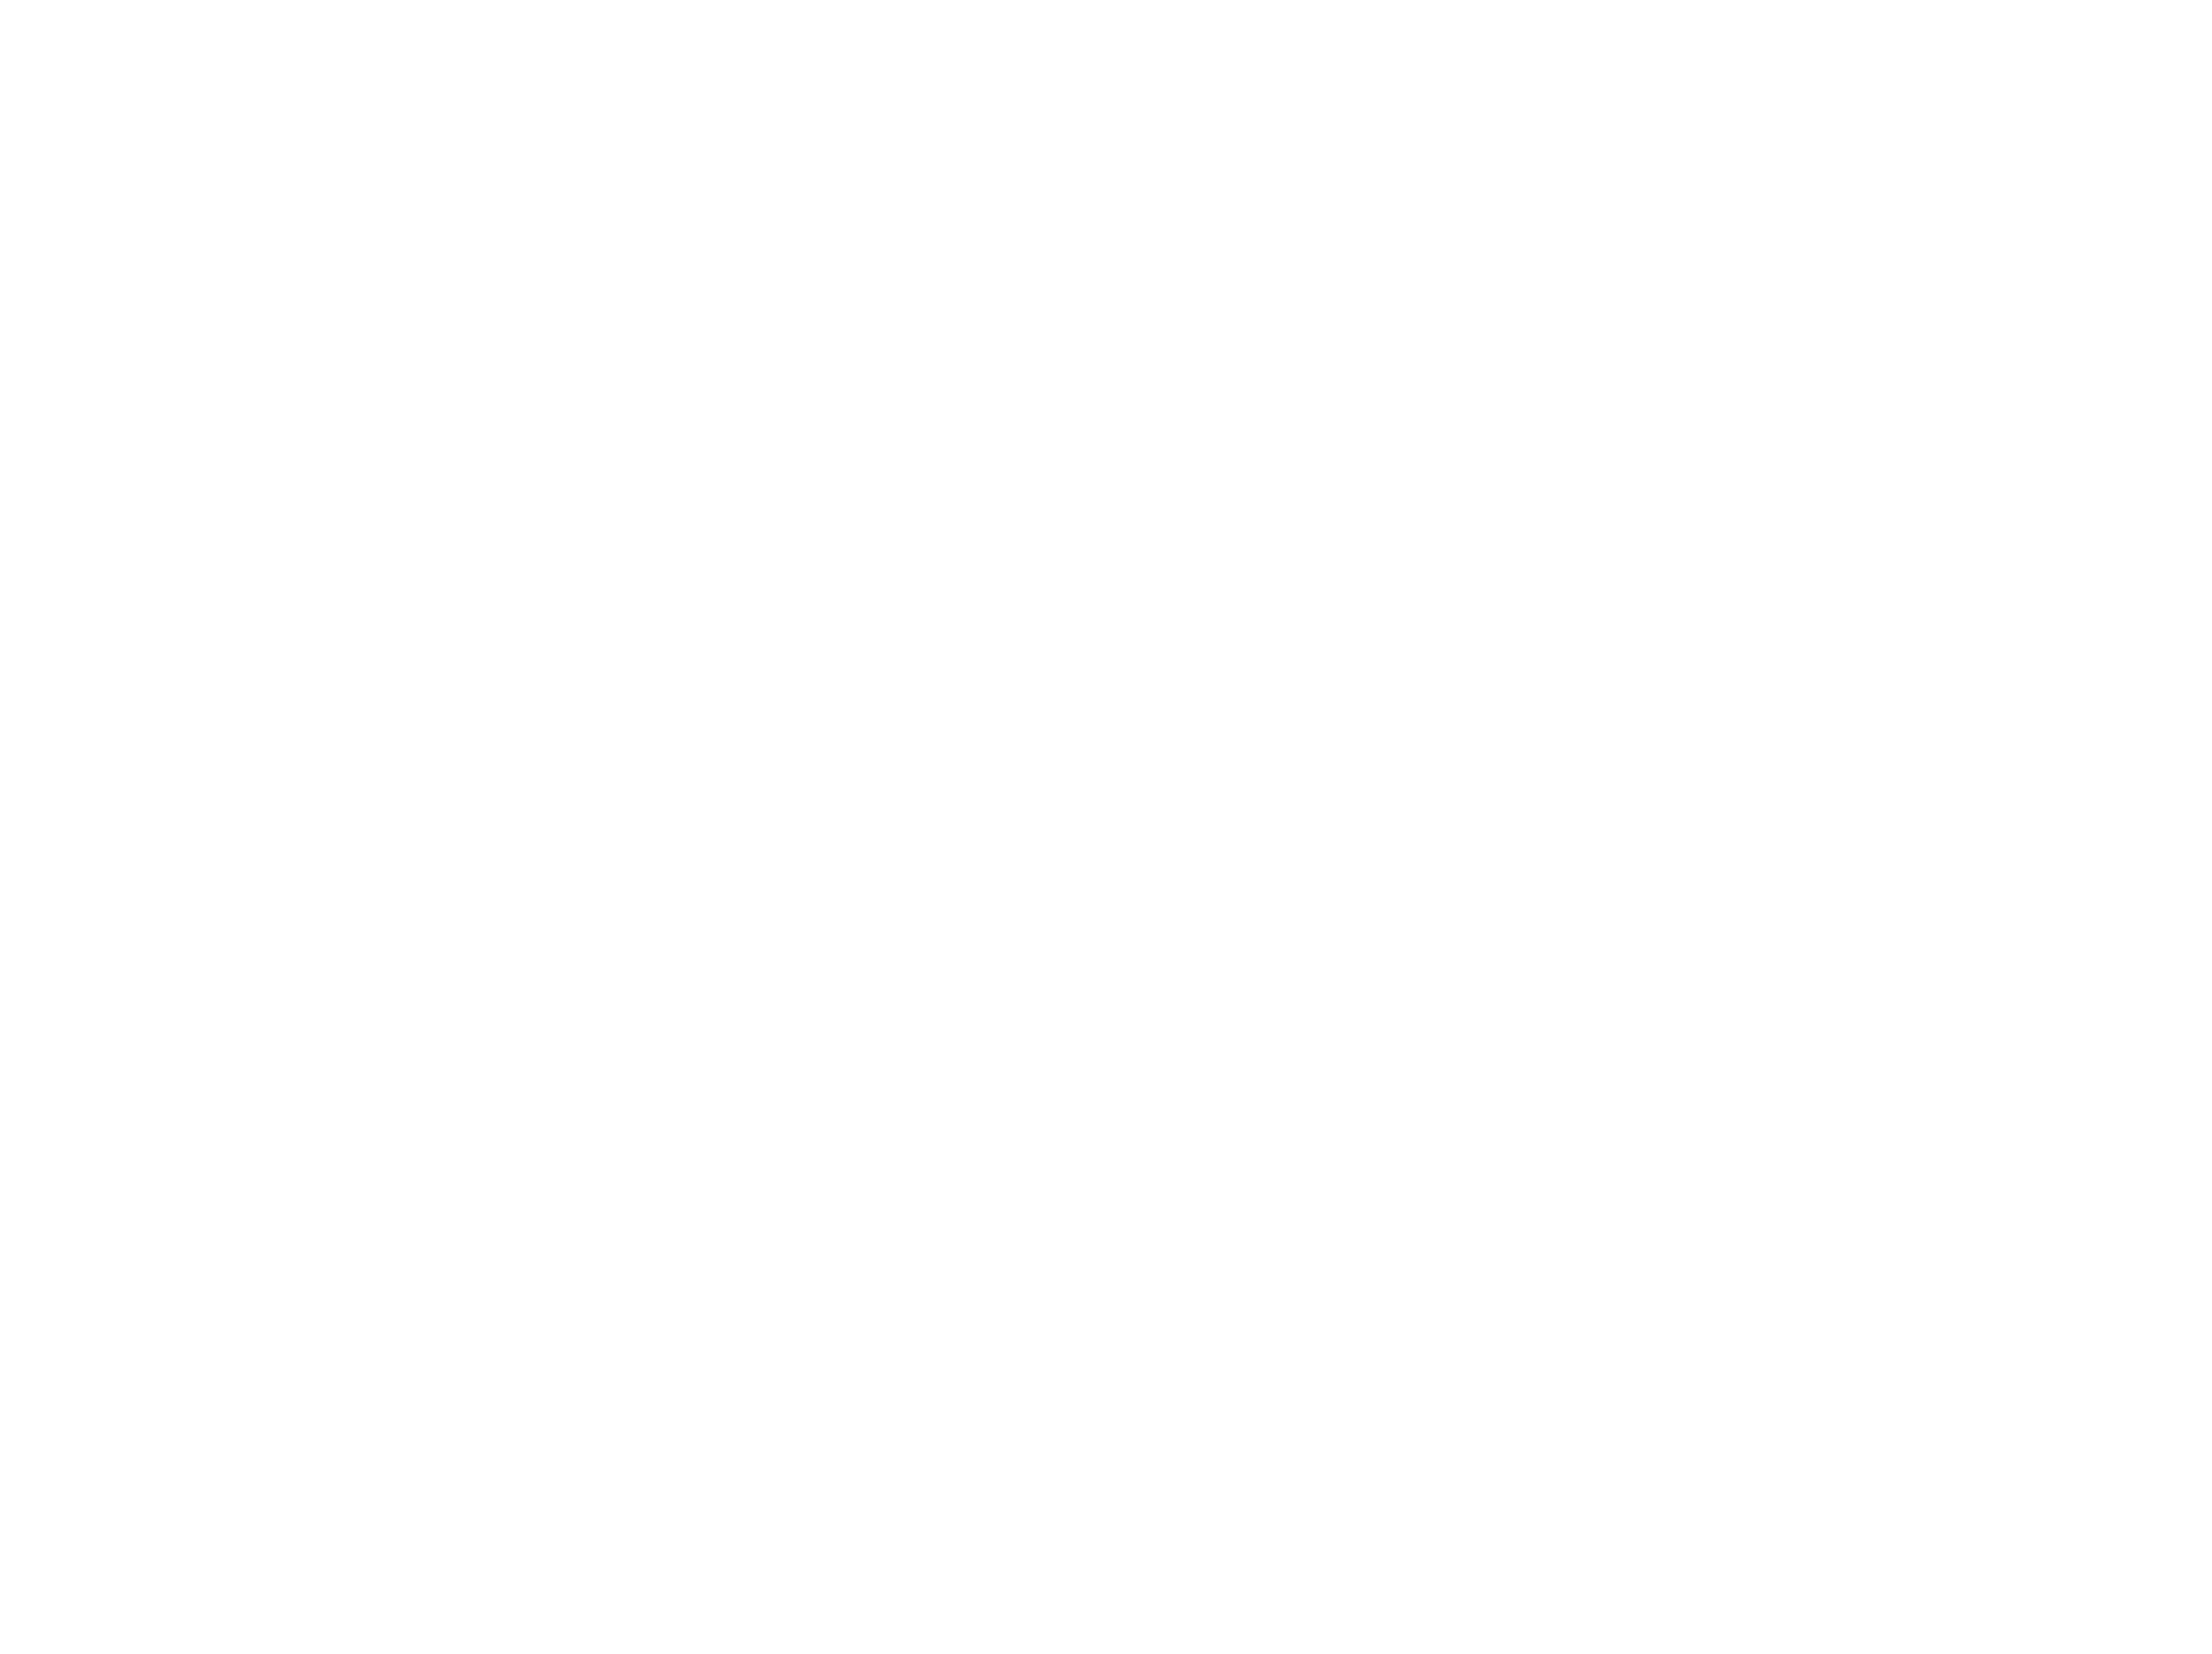 Yves Wilson